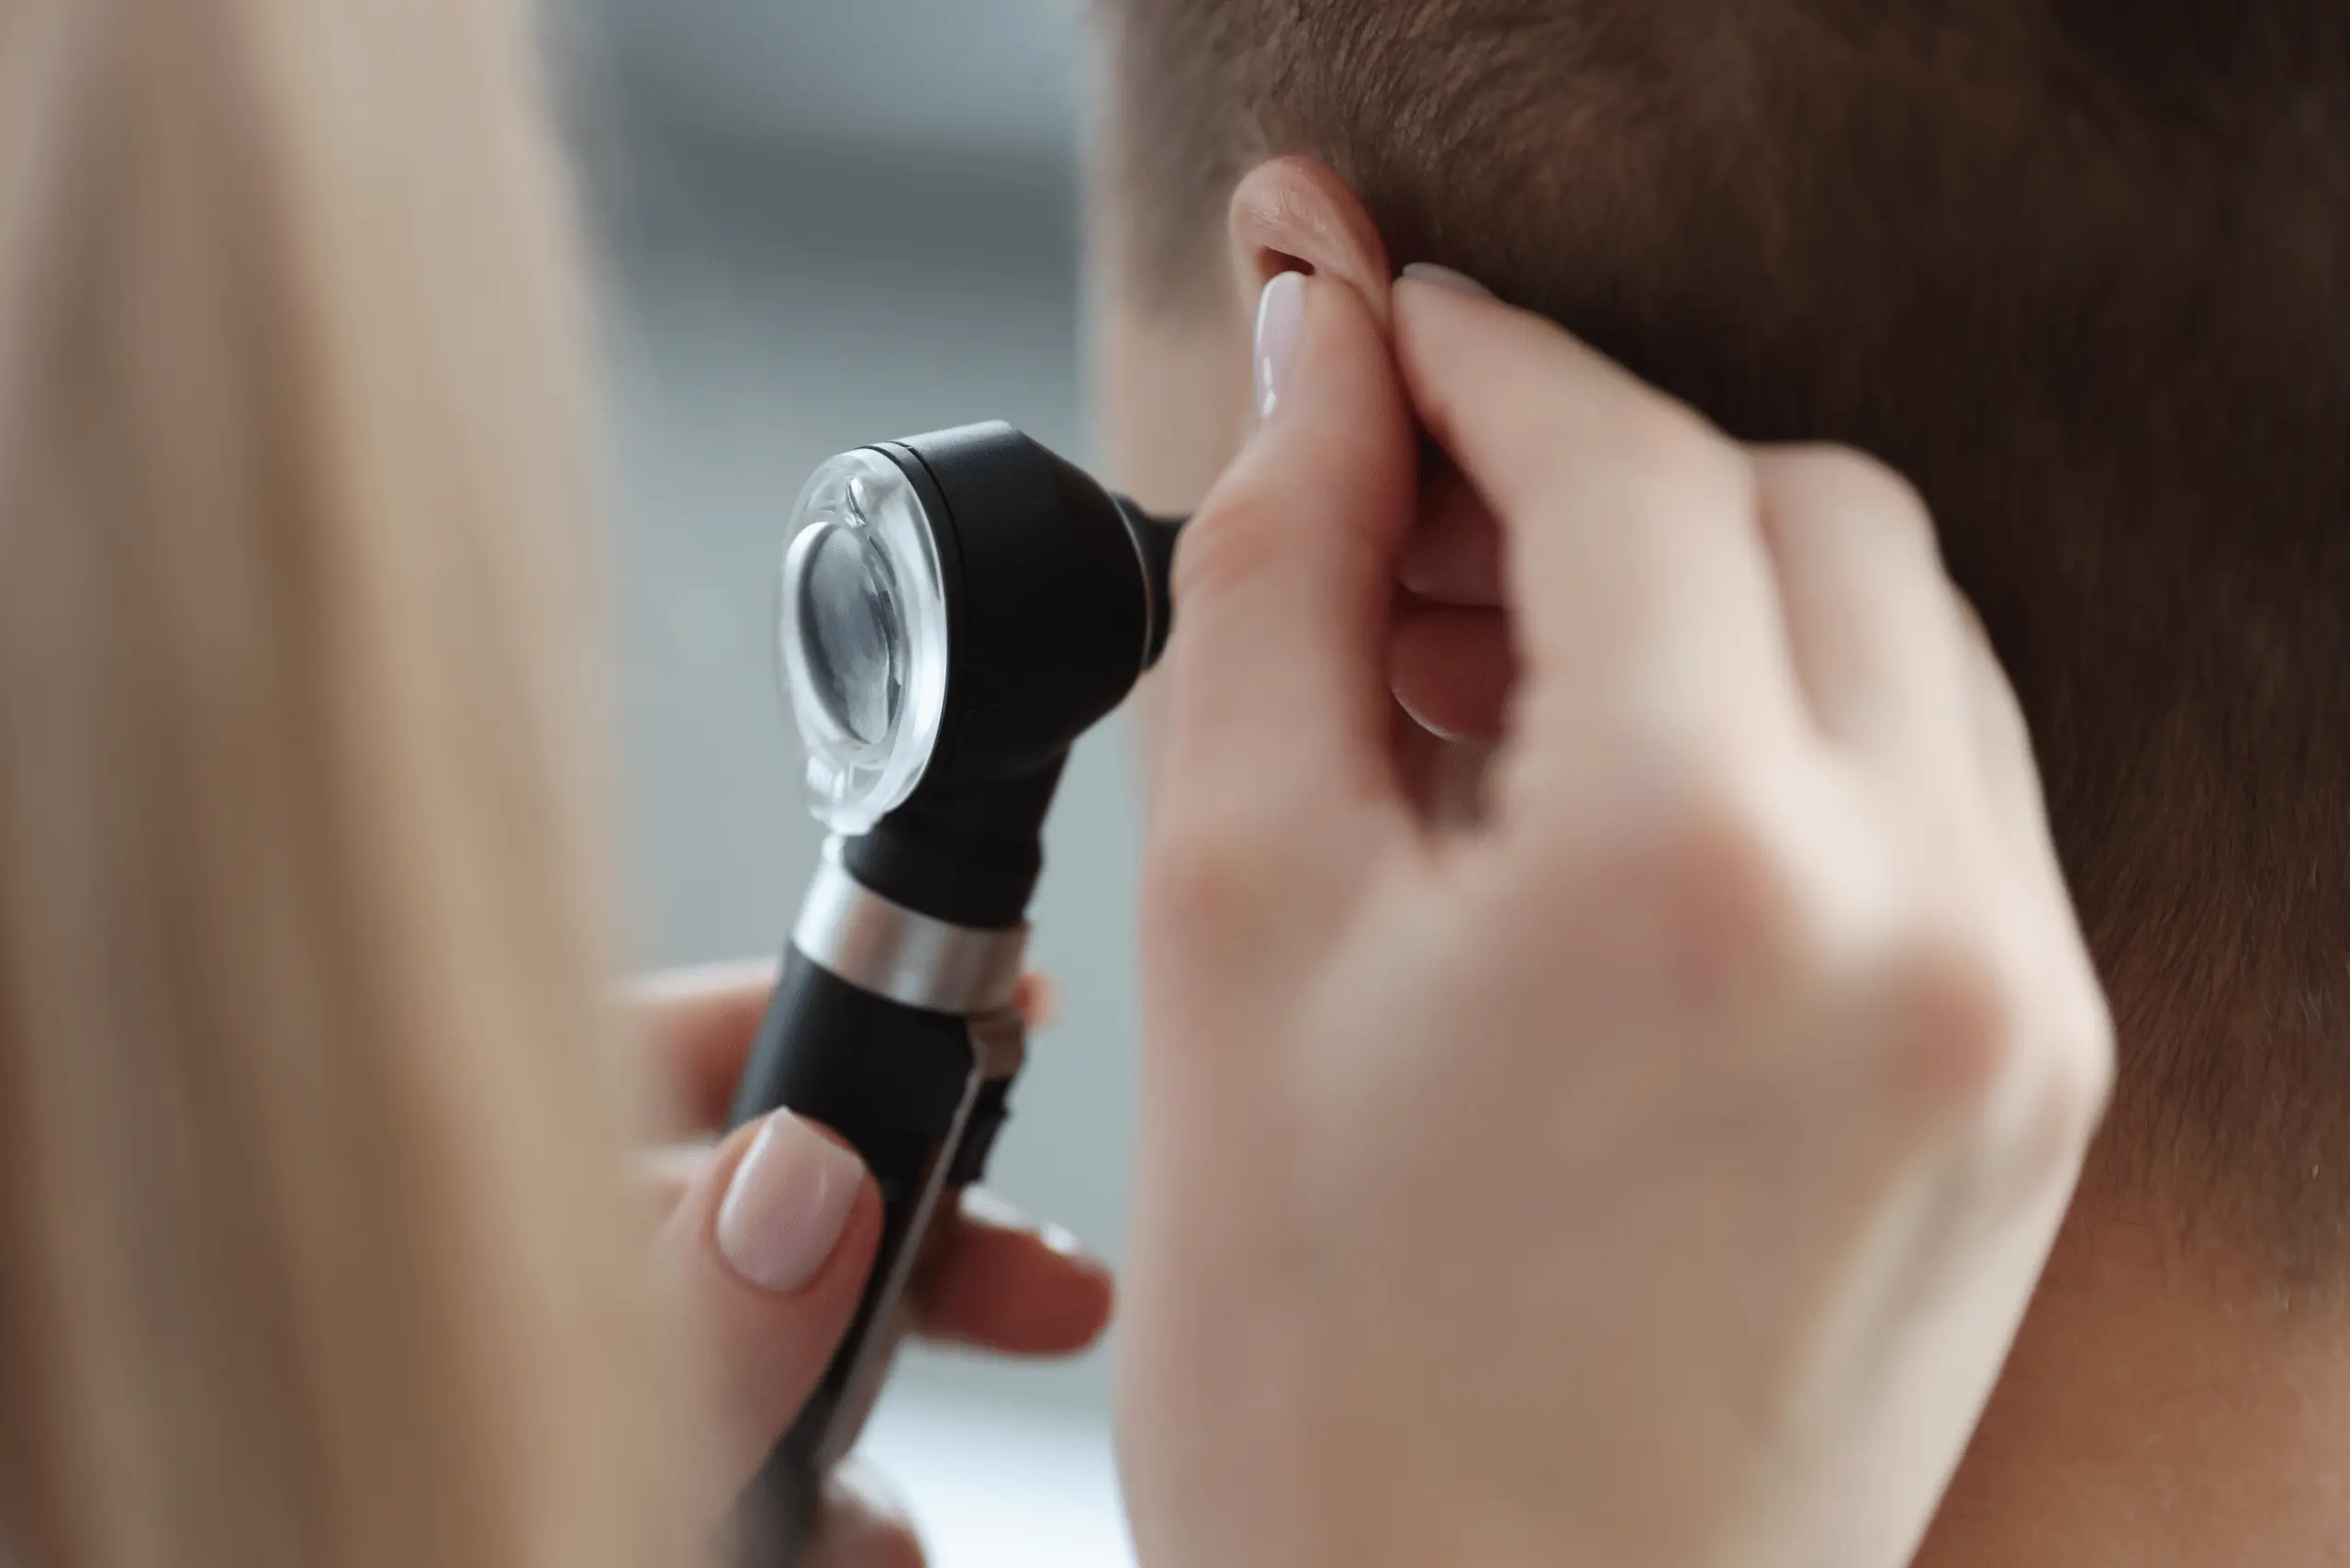 Marmed - Aparaty Słuchowe - Badanie Słuchu - Perforacja błony bębenkowej